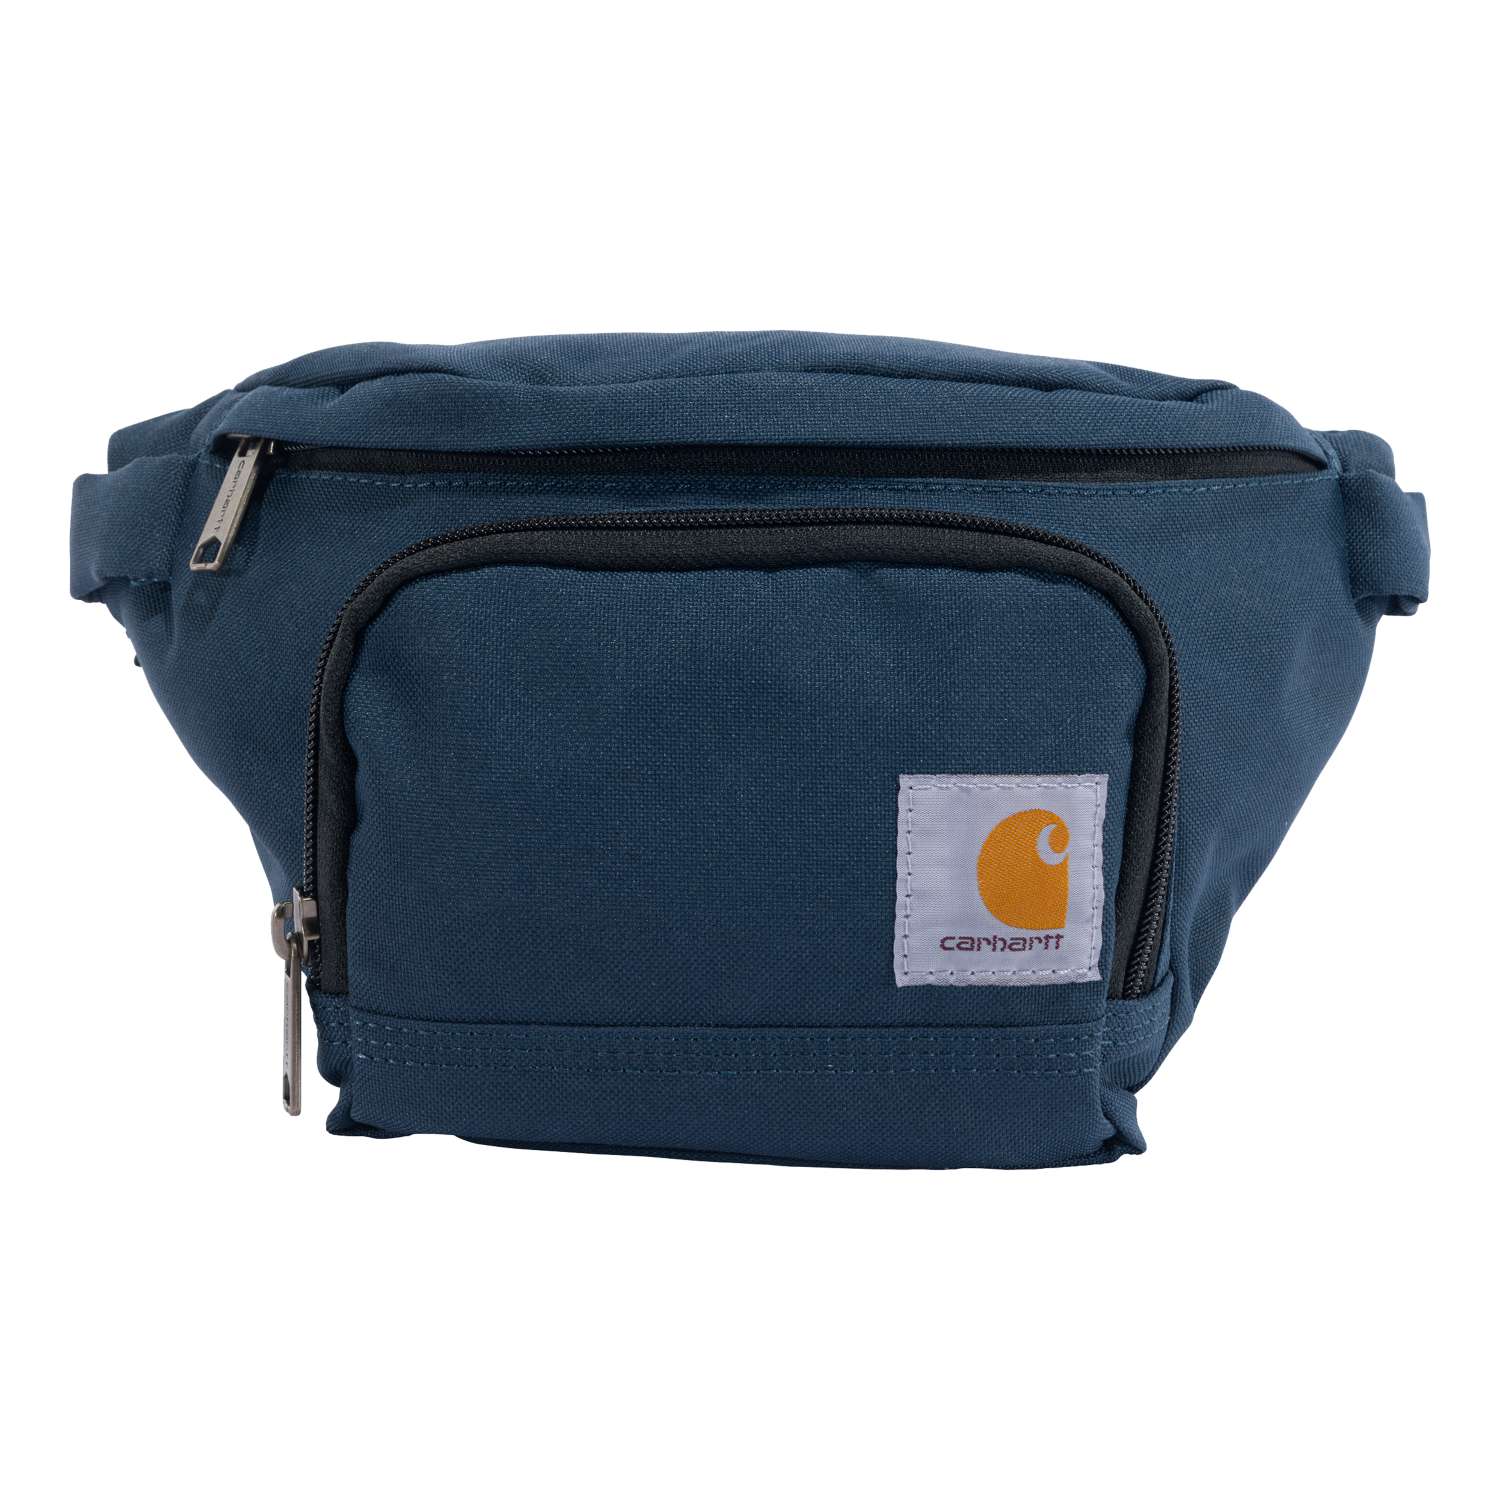 carhartt® Herren-Tasche »WAIST PACK« - One Size, navy - erhältlich bei ✌ HUG Technik ✓